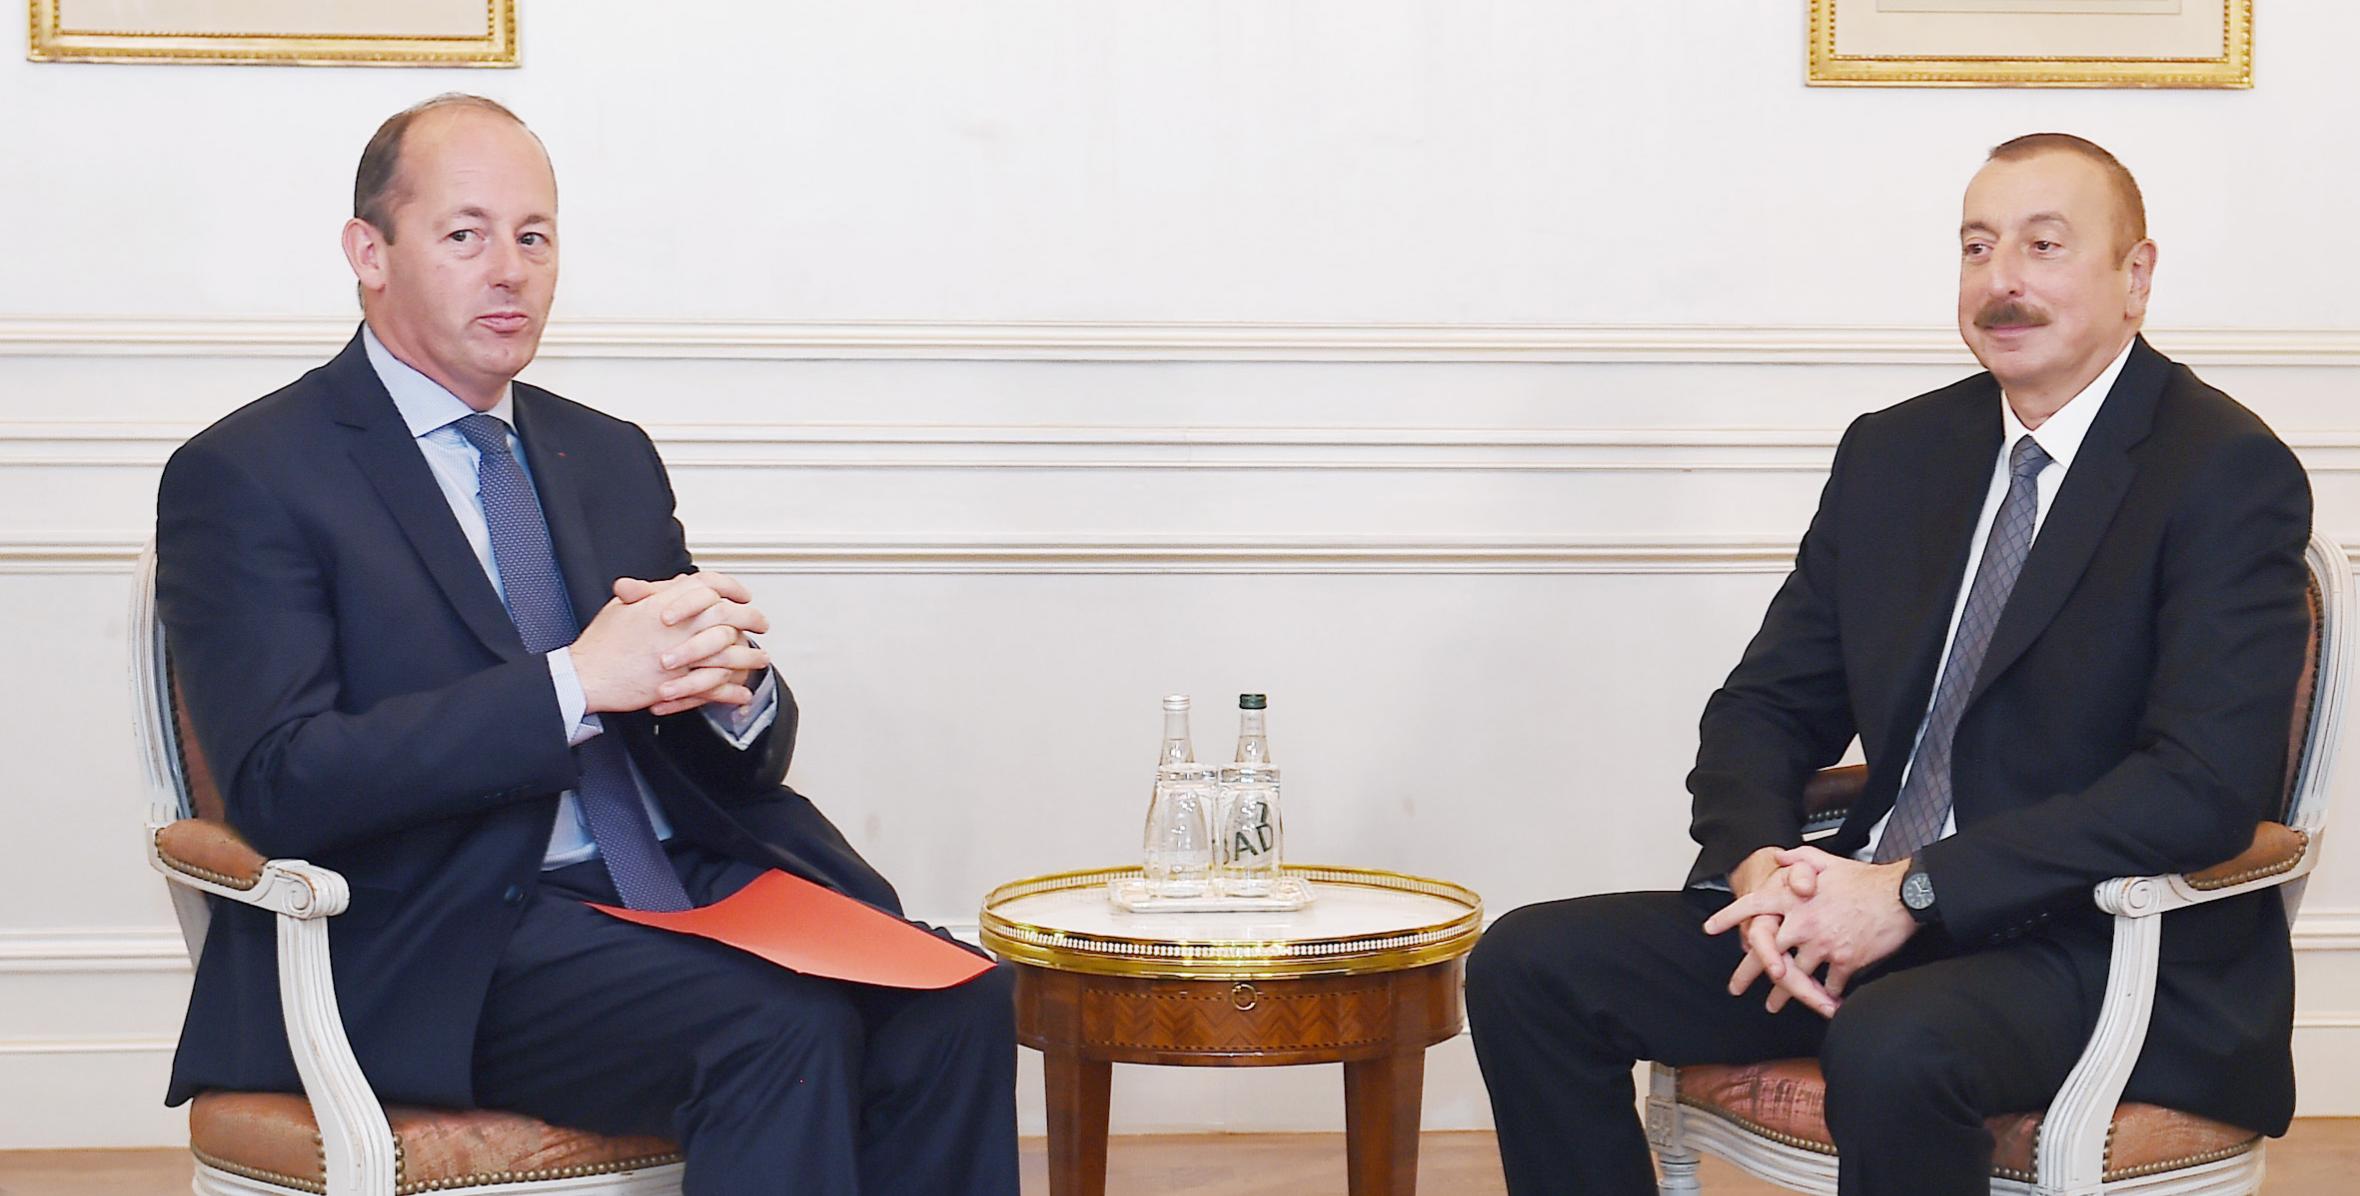 İlham Əliyev Parisdə “Airbus” şirkətinin Avrasiya üzrə vitse-prezidenti Silver Delonay ilə görüşüb